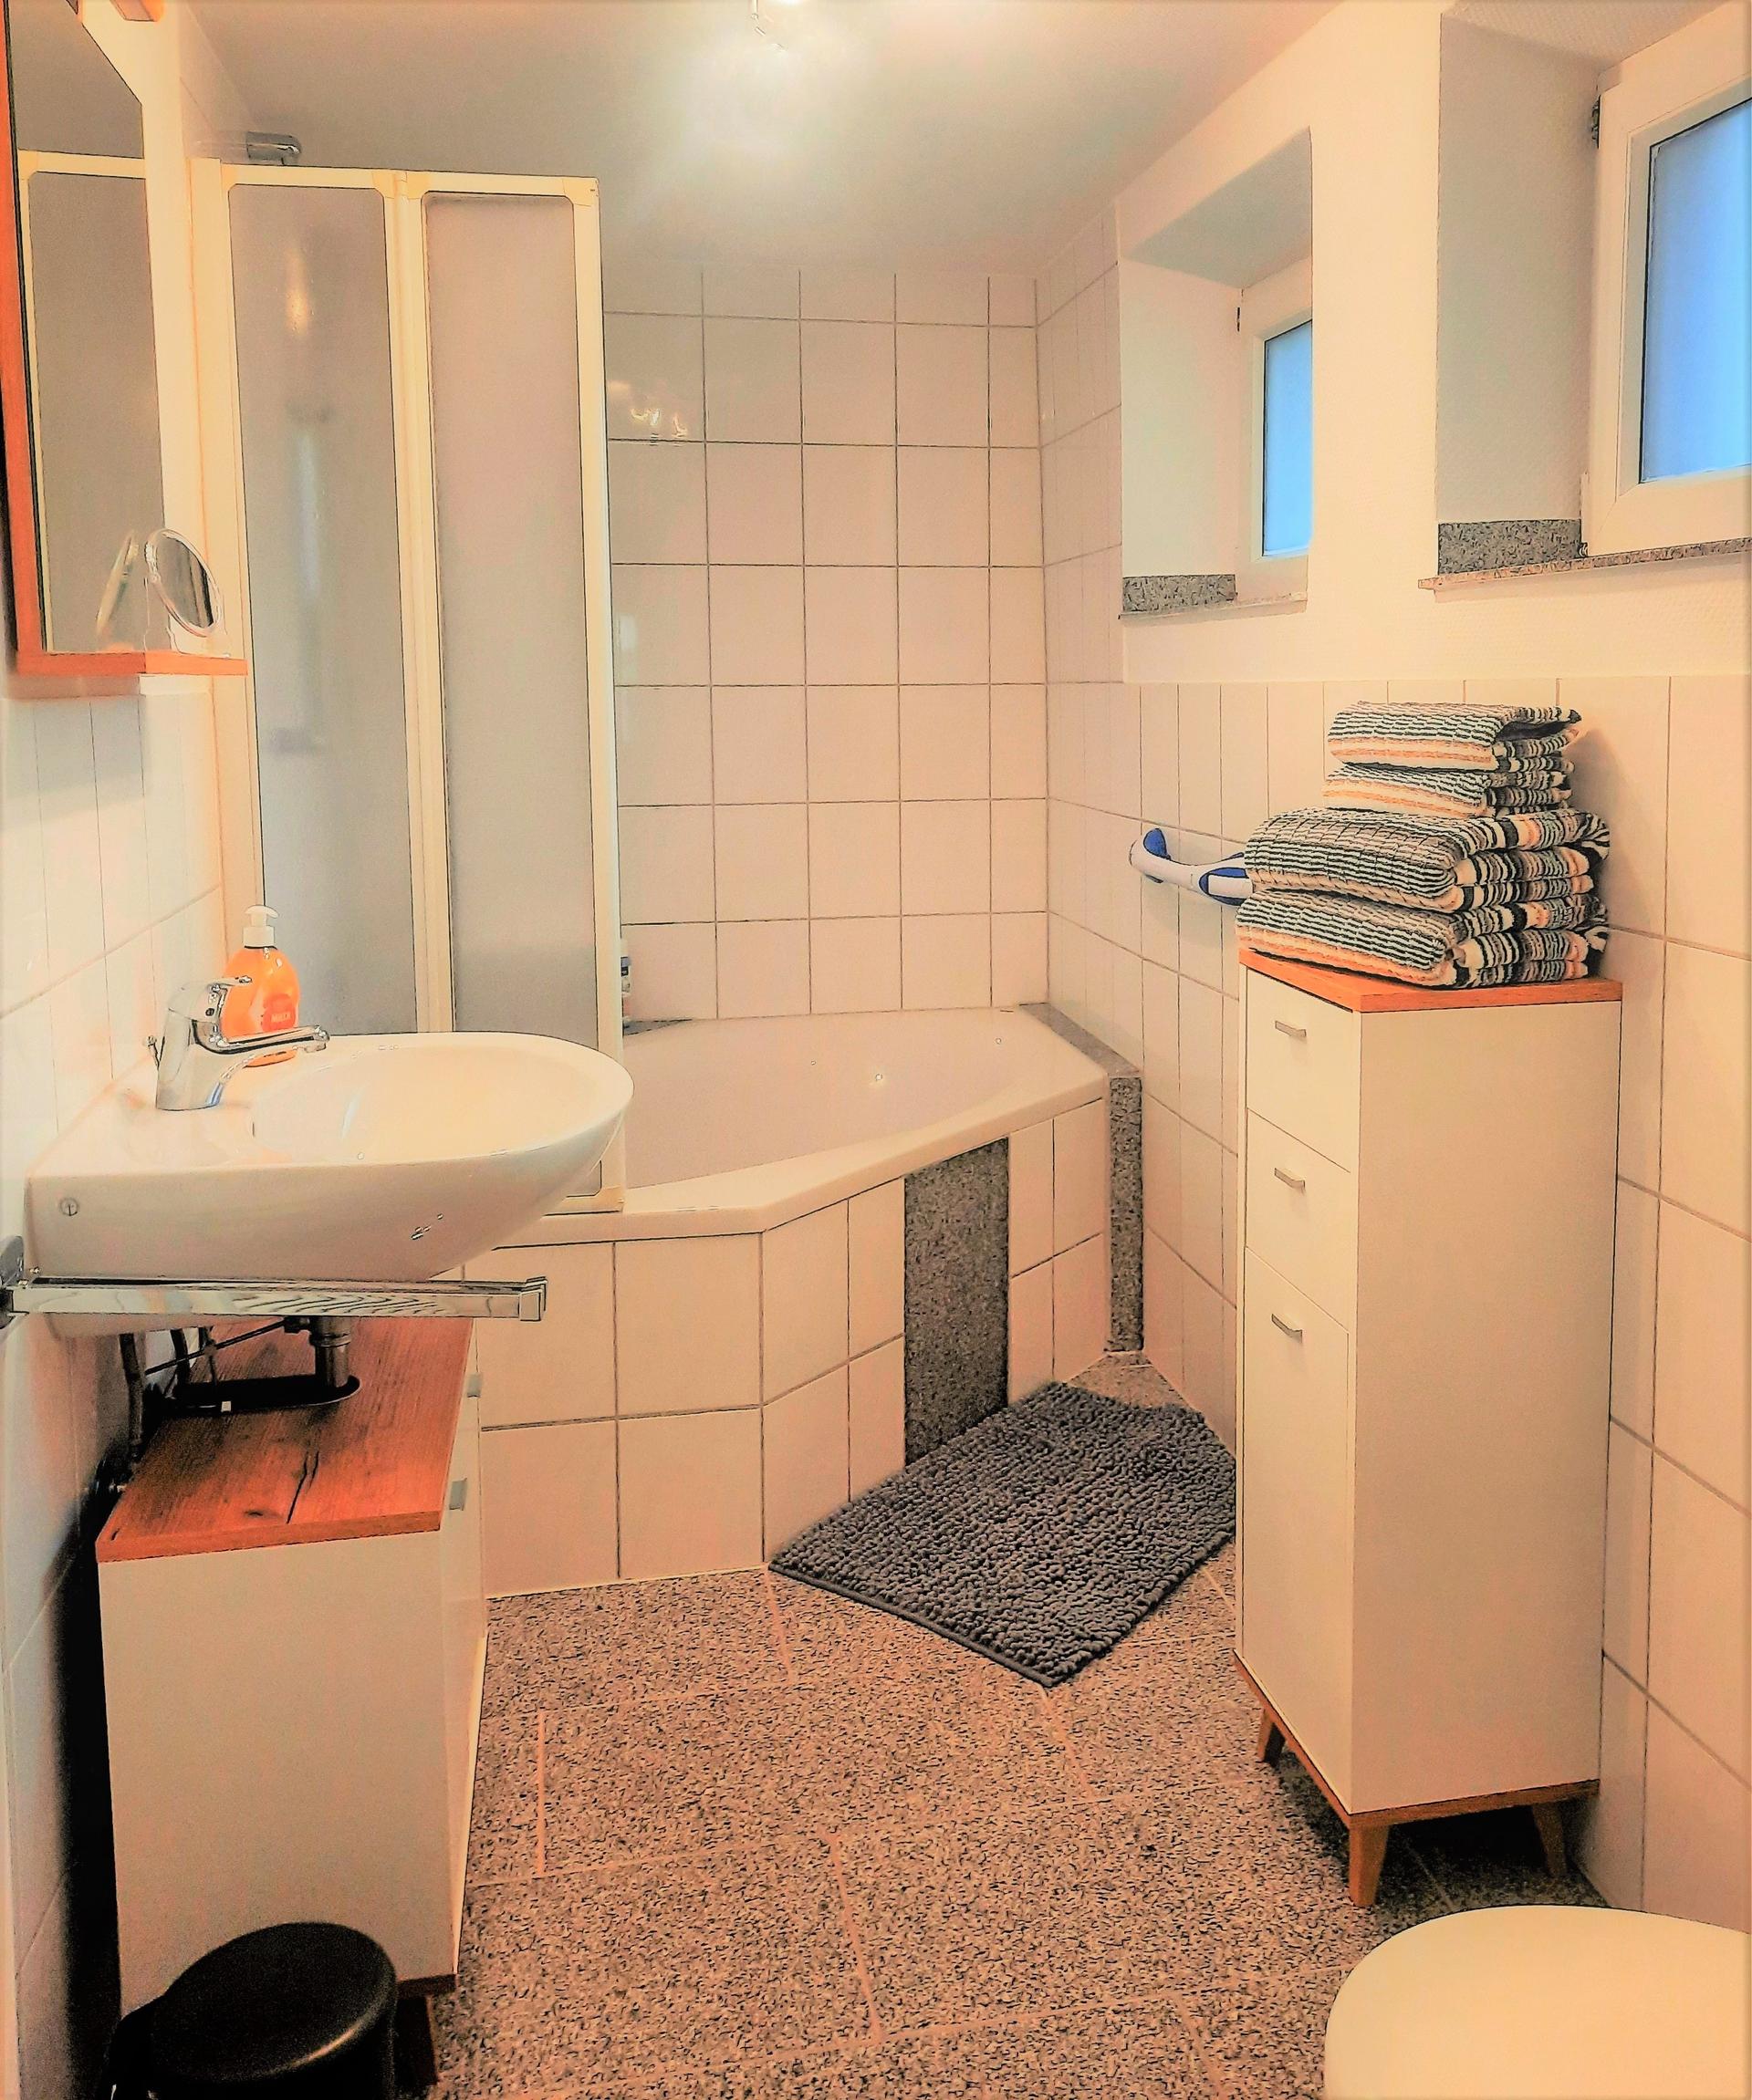 Foto von einem hellen Badezimmer. Es befindet sich eine Eckbadewanne mit einer Glasduschwand.  Rechts befindet sich ein Waschbecken mit Unterschrank und links ein halbhoher Schrank mit gefalteten dunkelblauen Handtüchern.